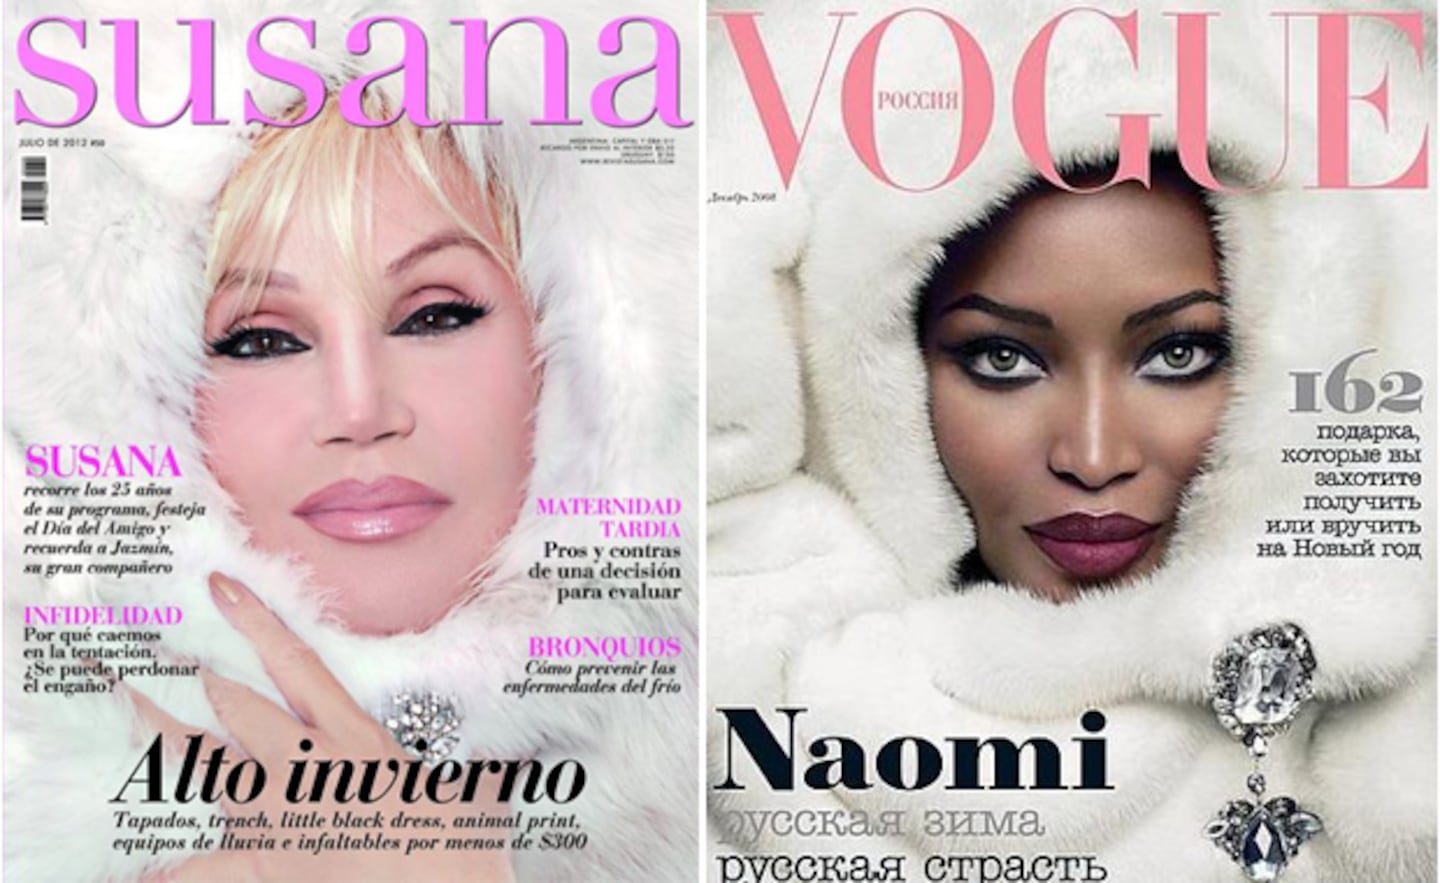 Revista Susana y Vogue de diciembre de 2008 (Fuente:Web)